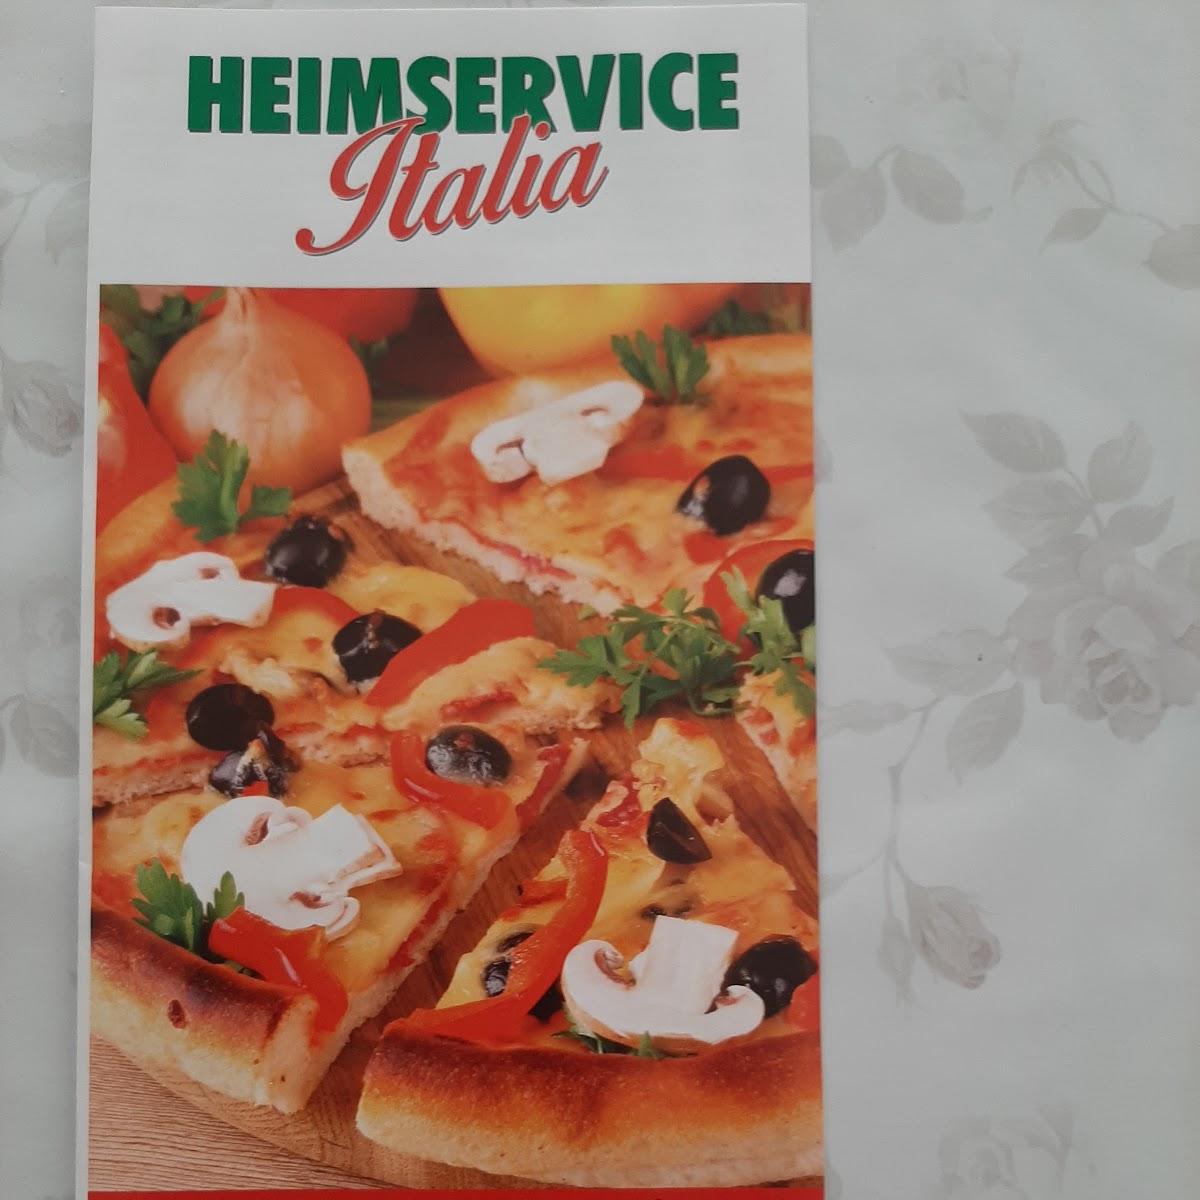 Restaurant "Heimservice Italia" in Waldfischbach-Burgalben